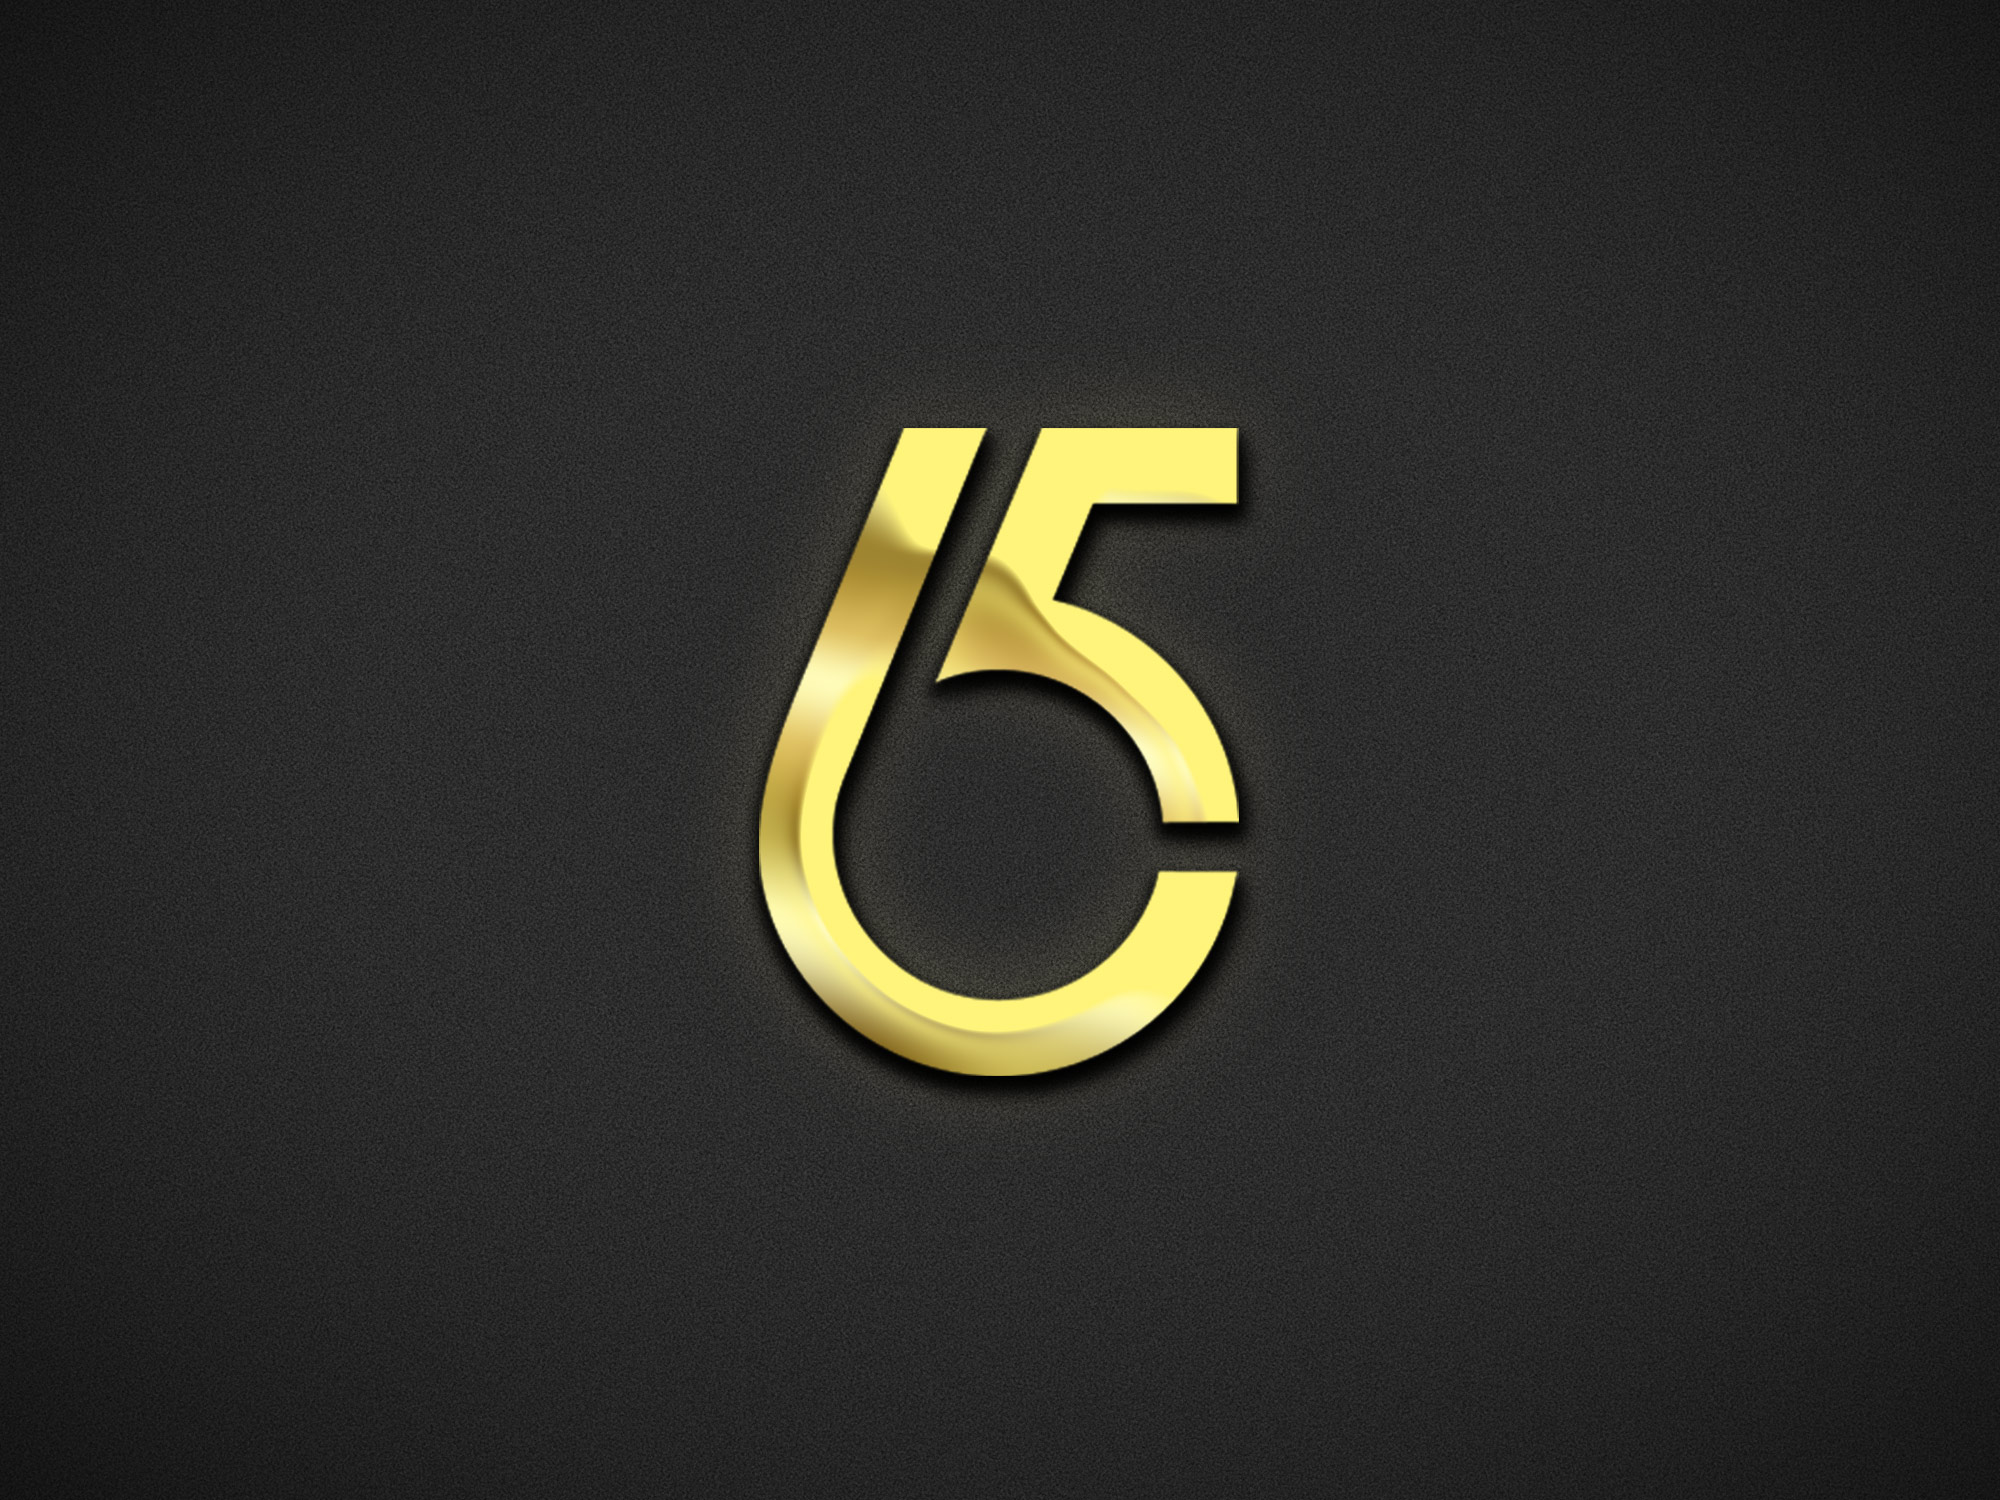 Golden number five on a black background.